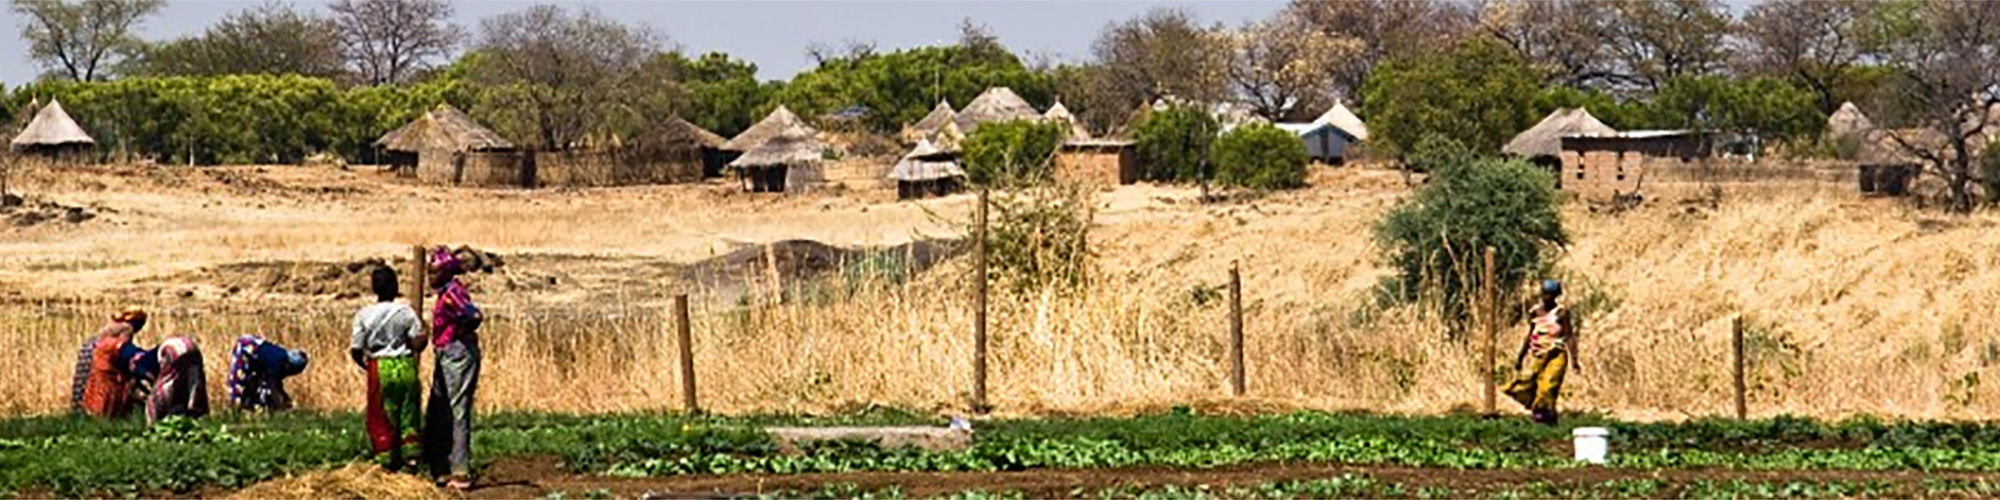 rural-ghana